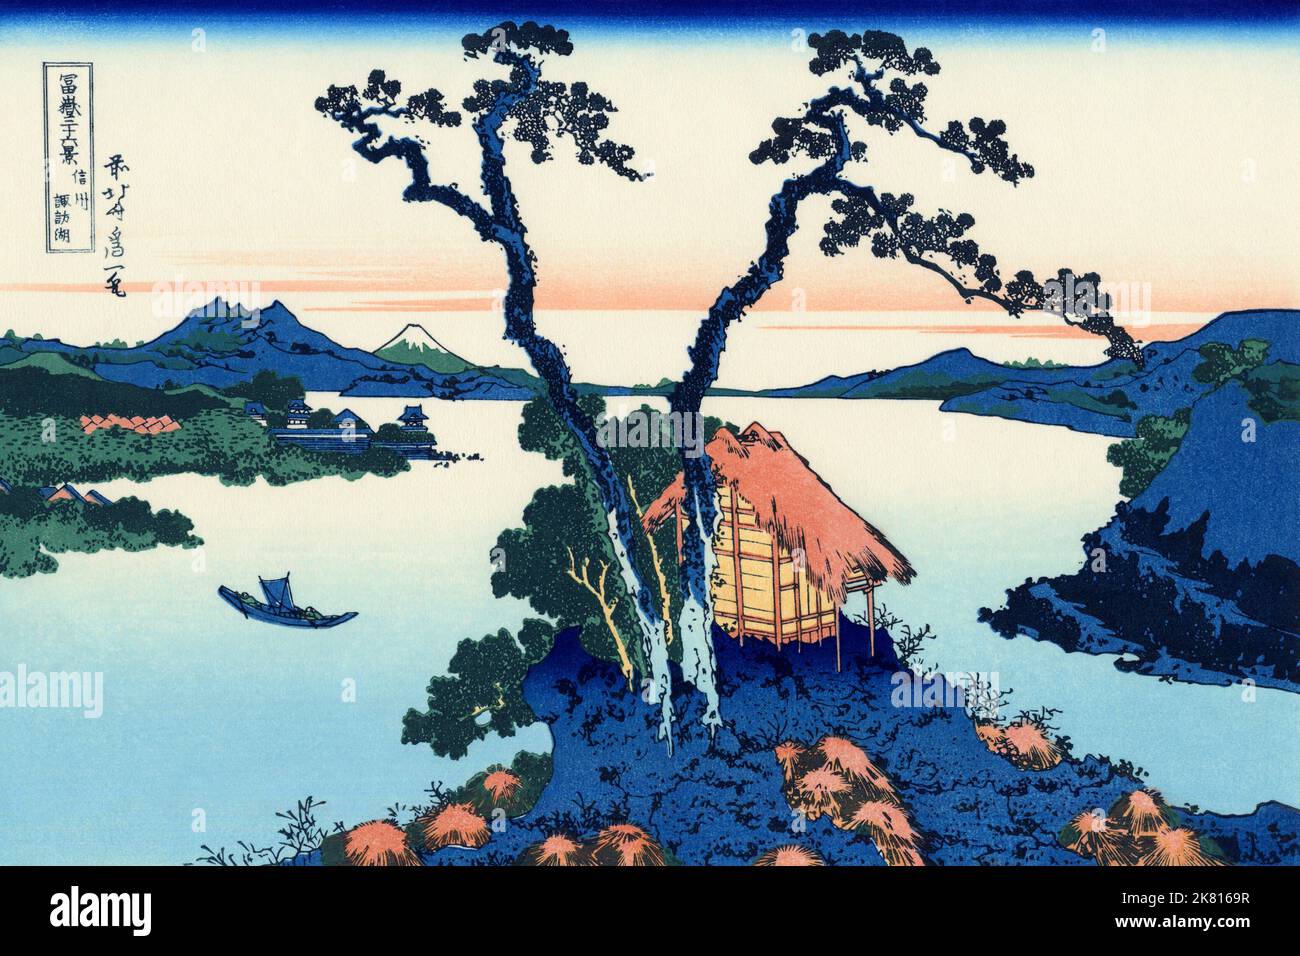 Japan: ‘Lake Suwa in der Provinz Shinano’. Ukiyo-e Holzschnitt aus der Serie ‘36 Ansichten des Fuji’ von Katsushika Hokusai (31. Oktober 1760 - 10. Mai 1849), c. 1830. ‘36 Views of Mount Fuji’ ist eine ‘„Sukiyo-e“-Serie großer Holzschnitte der Künstlerin Katsushika Hokusai. Die Serie zeigt den Fuji in unterschiedlichen Jahreszeiten und Wetterbedingungen an verschiedenen Orten und Entfernungen. Es besteht tatsächlich aus 46 Drucken, die zwischen 1826 und 1833 entstanden sind. Die ersten 36 wurden in die Originalpublikation aufgenommen, und aufgrund ihrer Popularität wurden nach der Originalpublikation 10 weitere hinzugefügt. Stockfoto